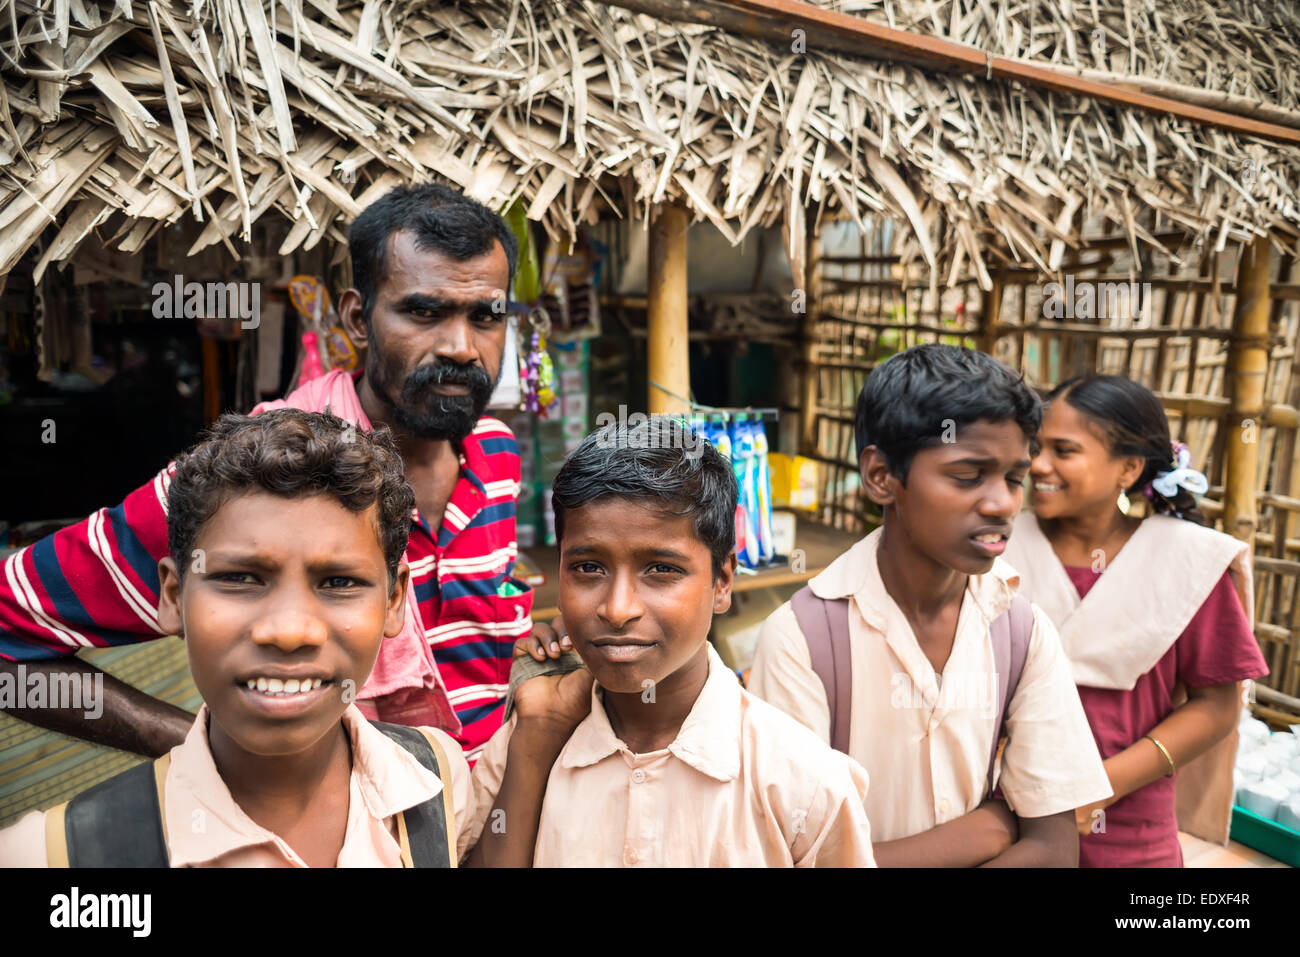 THANJAVUR, India - 13 febbraio: una scuola non identificato i bambini in uniforme per andare a casa dopo le lezioni a scuola. India, nello Stato del Tamil Nadu Foto Stock